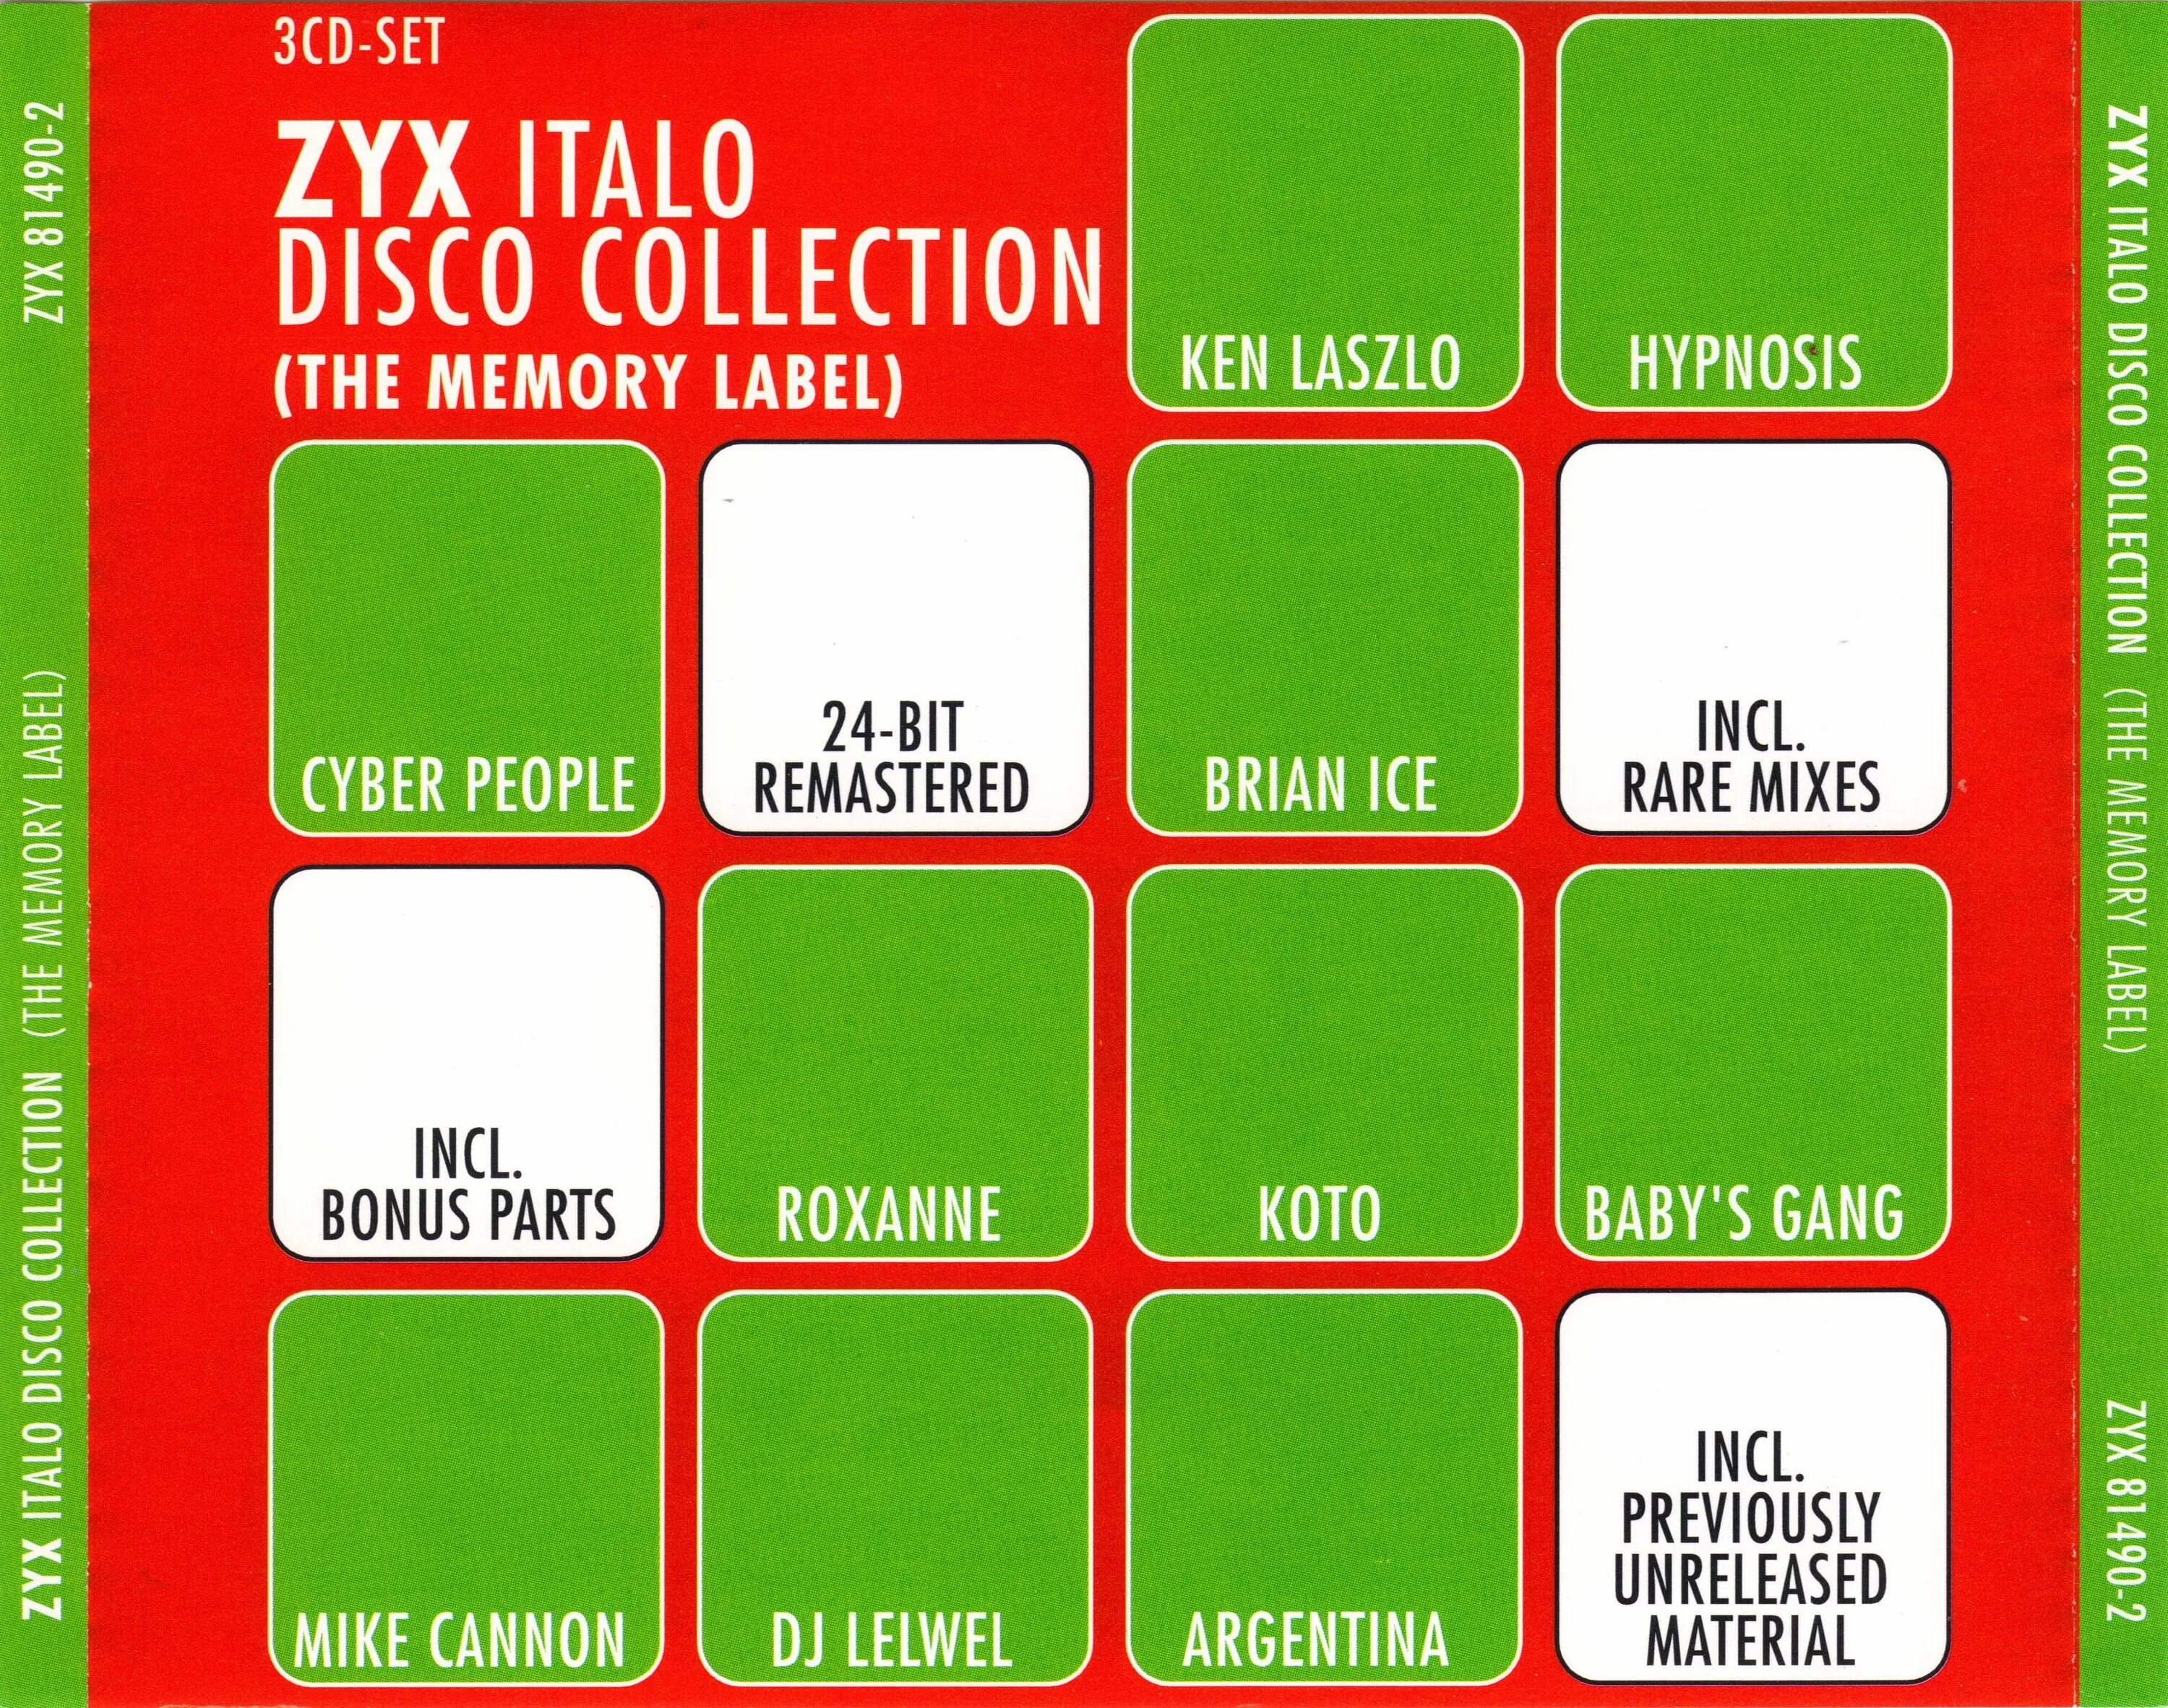 I Love ZYX Italo Disco collection 20. Collection of Italo Disco Vol 1. Cyber people ZYX Italo Disco collection (the Memory Label) cd1. I Love ZYX Italo Disco collection 16. Italo disco collection